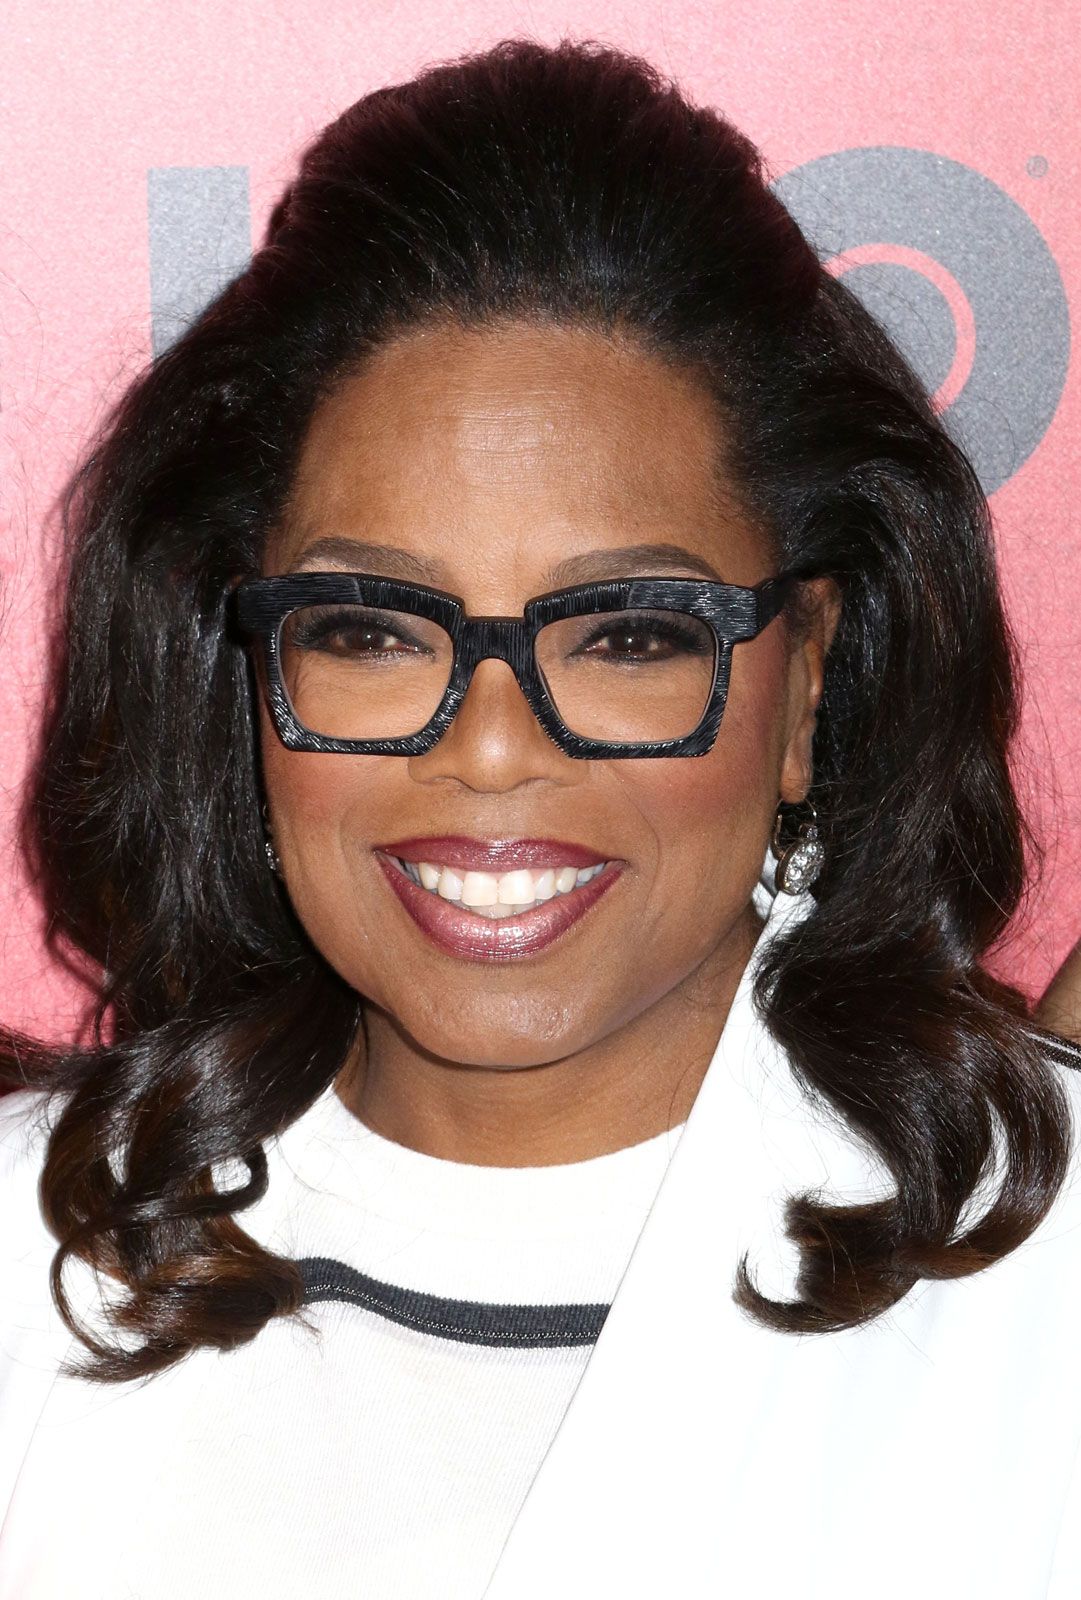 Oprah Winfrey - An most famous woman entrepreneur